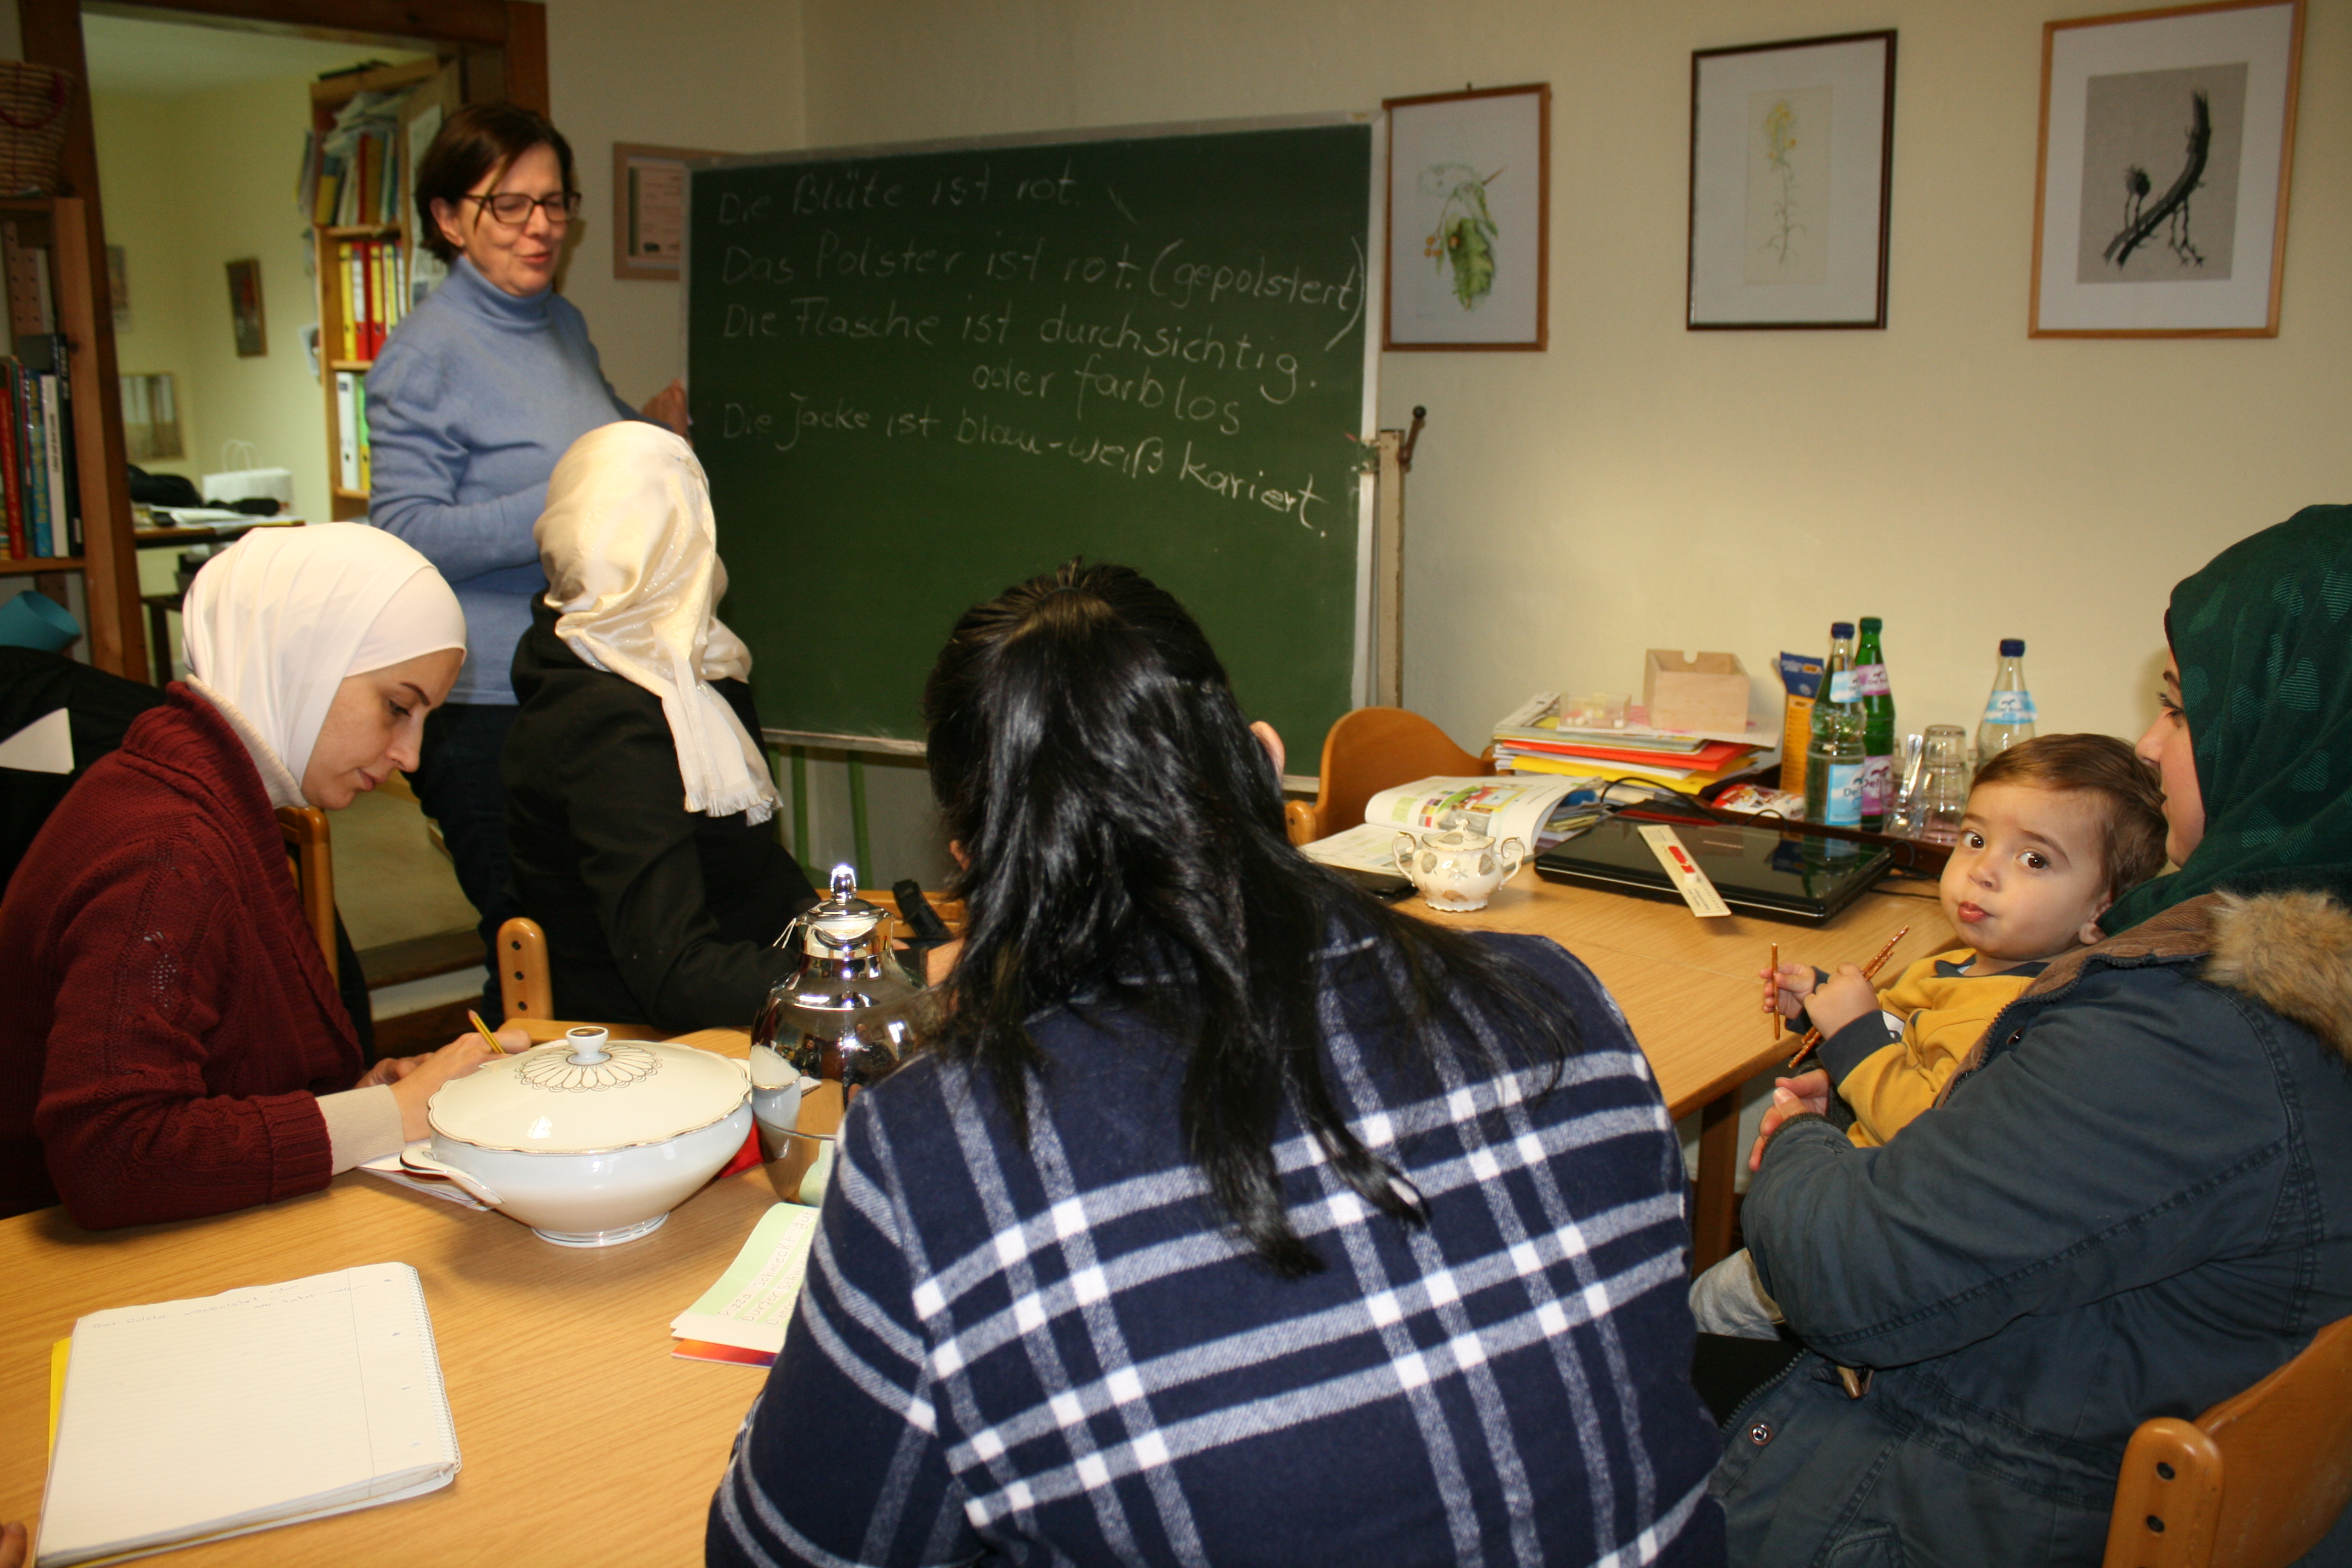 Freiwilliger Sprachunterricht für Flüchtlings- und Migrantenfrauen in Leibs Heisje